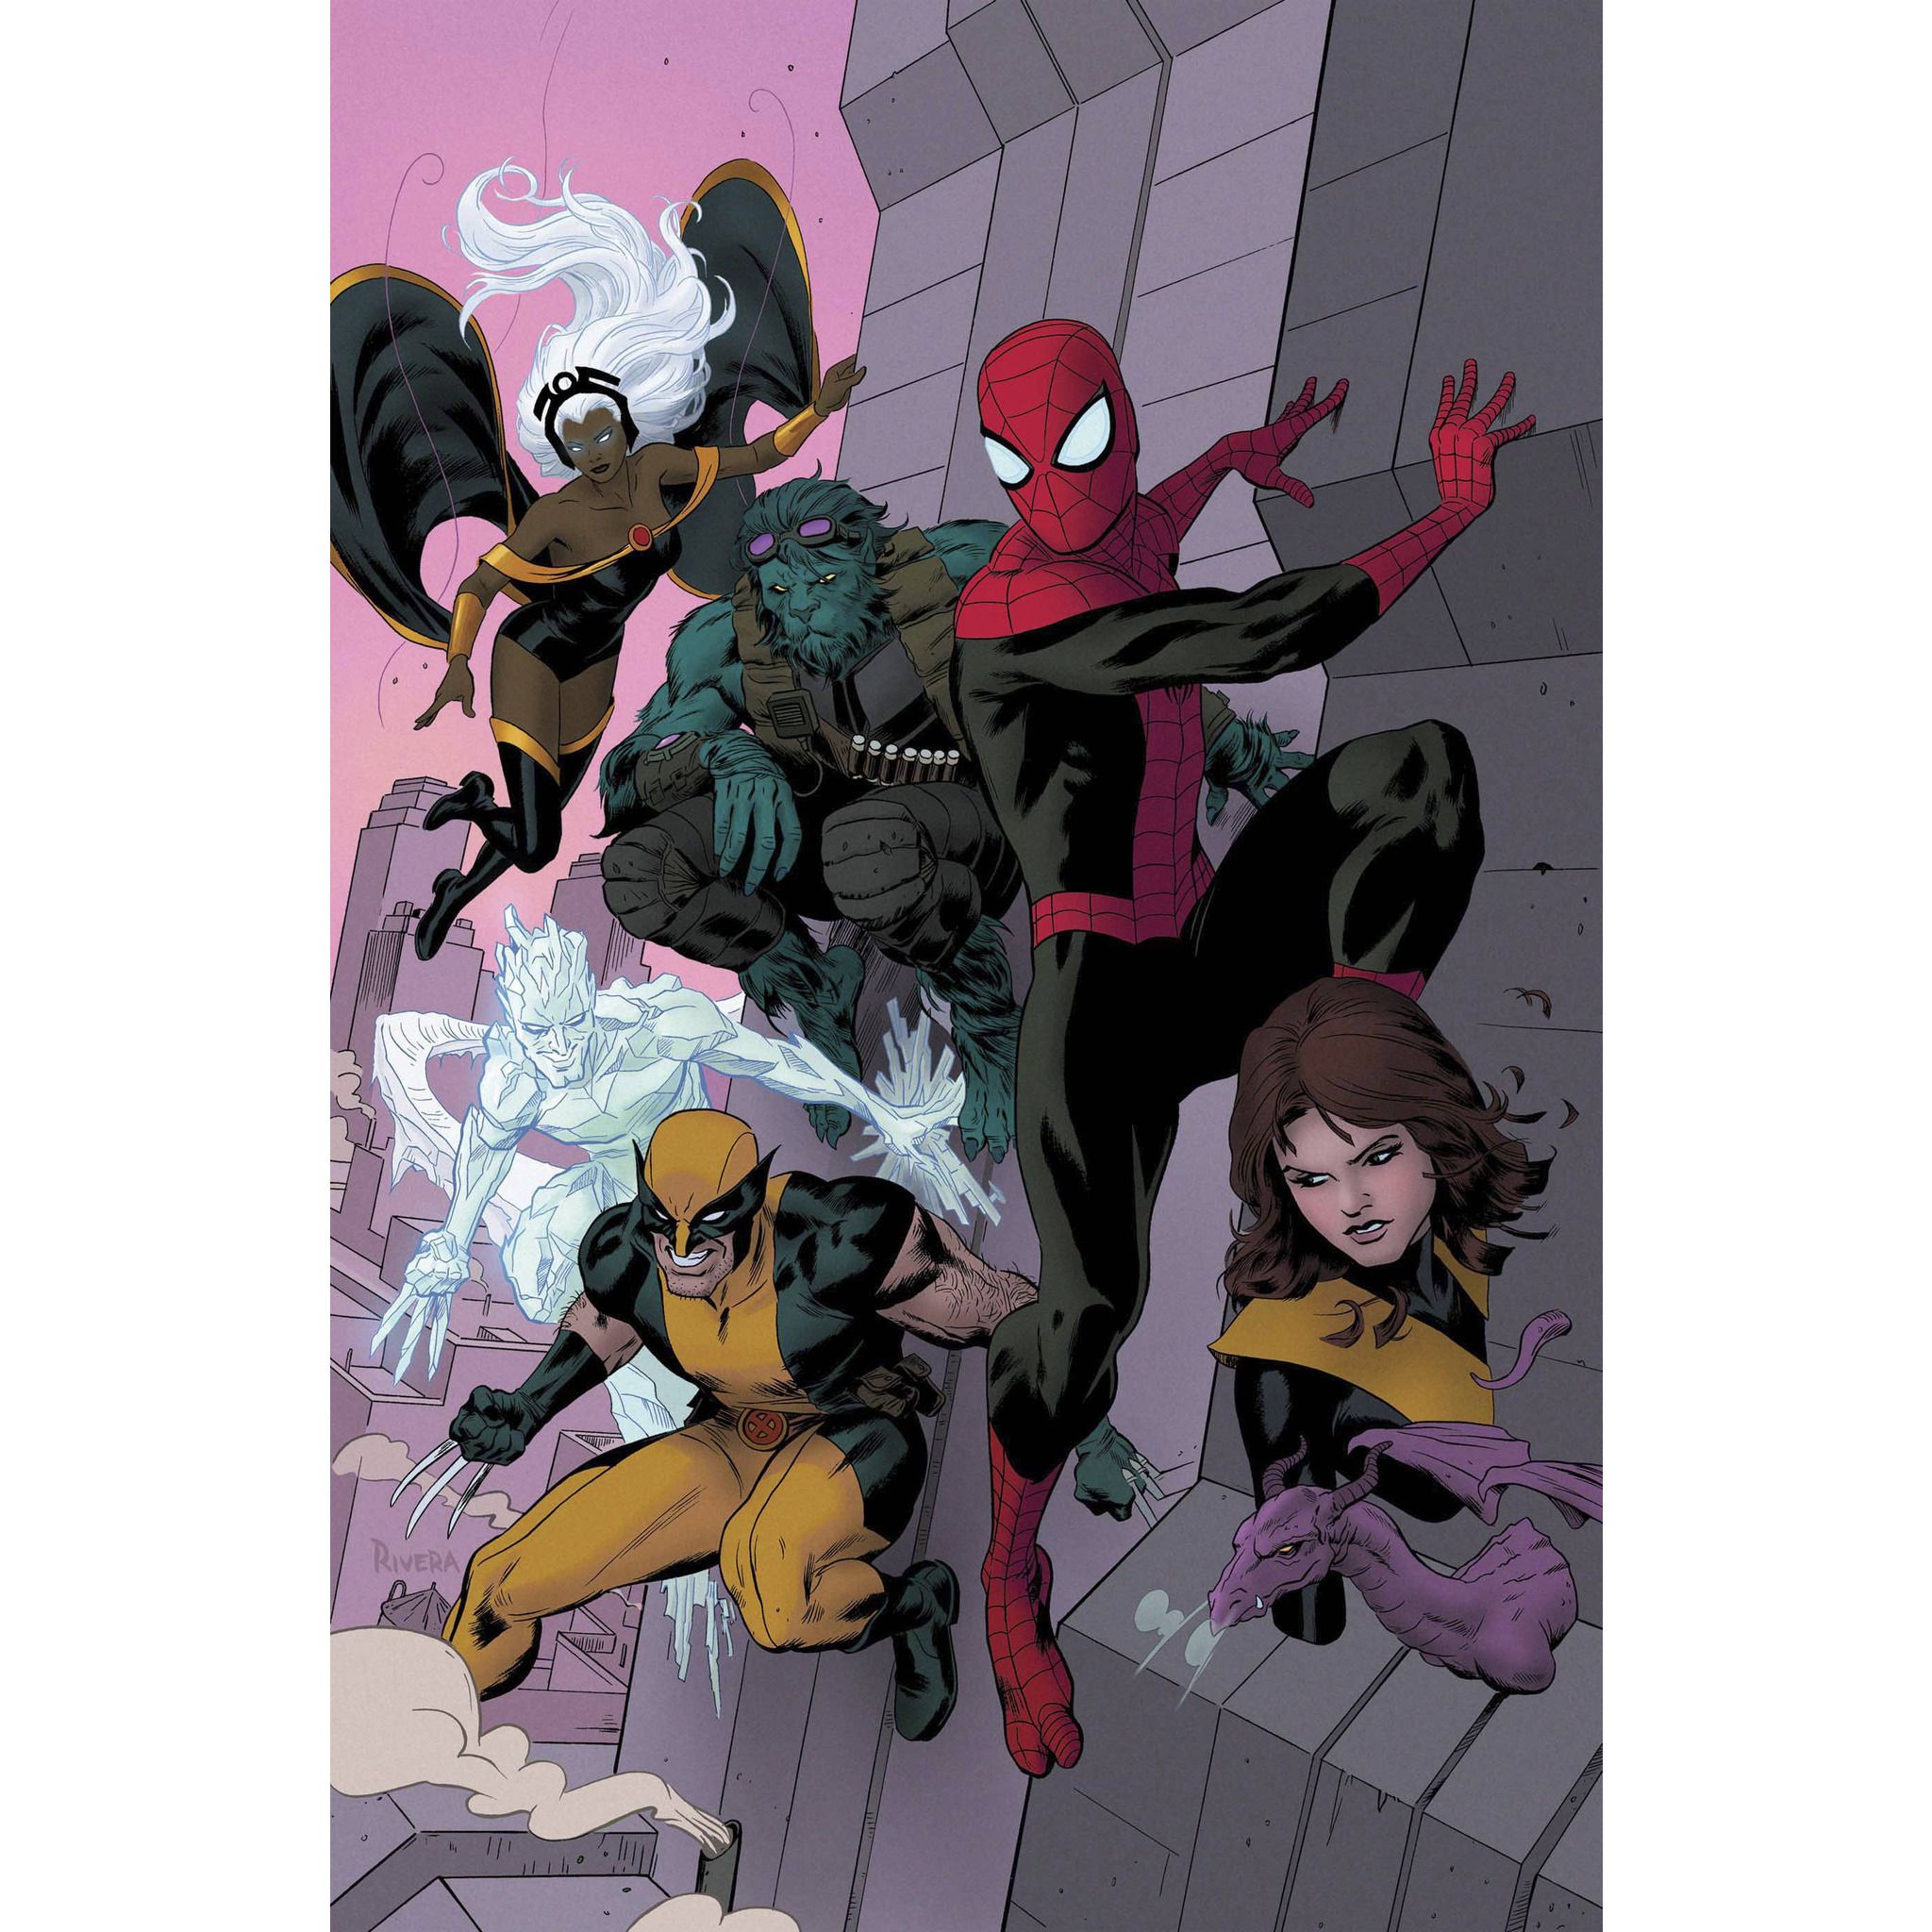  Superior Spider-Man Team-Up: Superiority Complex TP Uncanny!